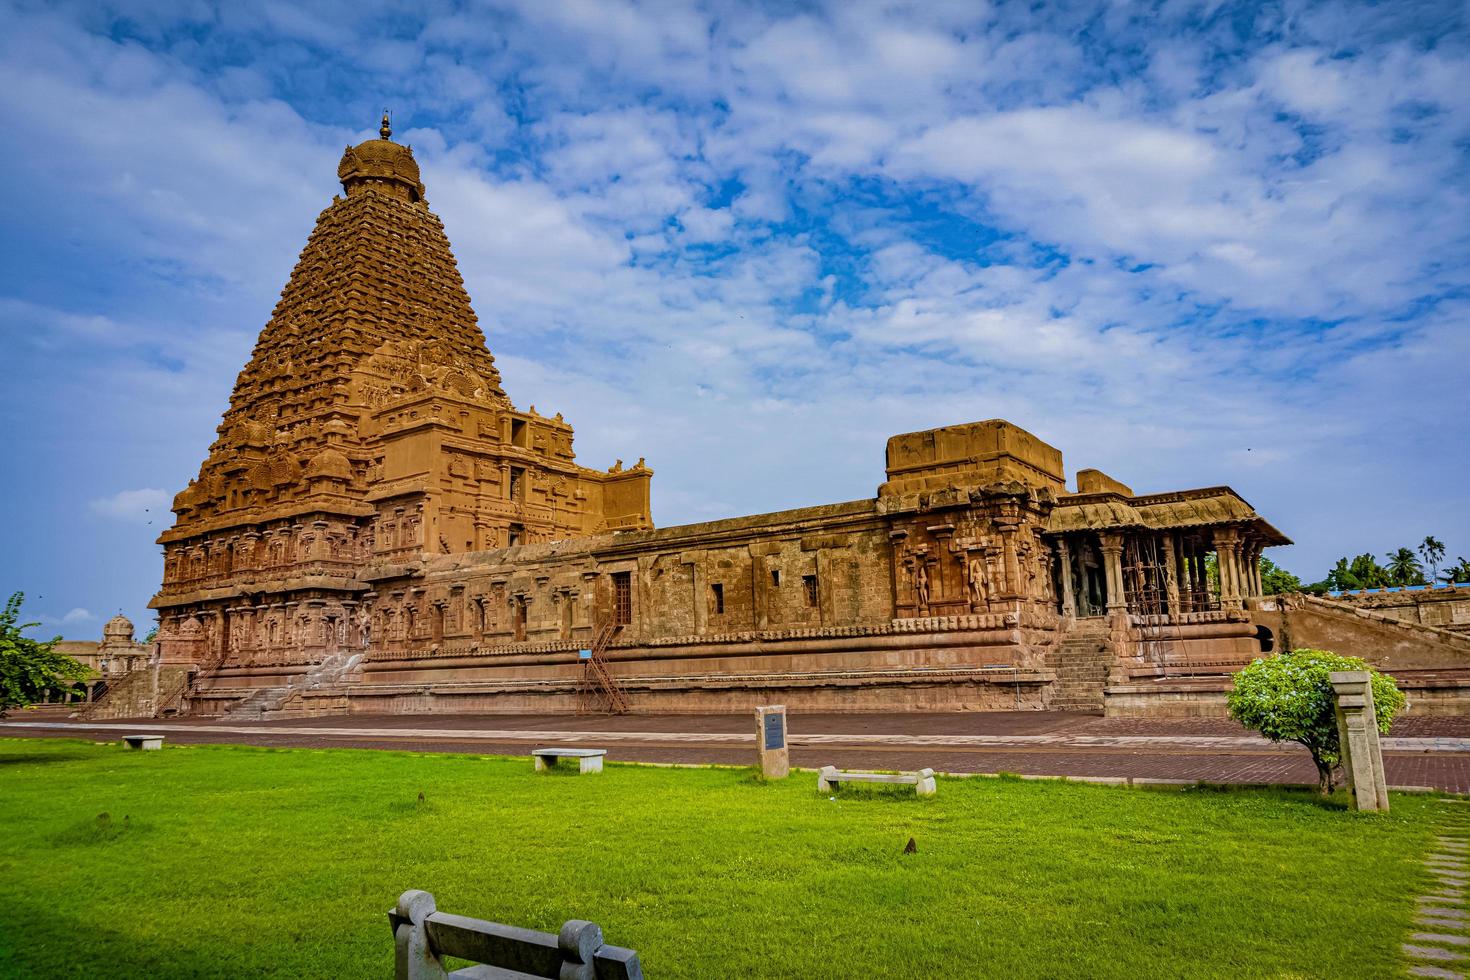 tanjore stor tempel eller brihadeshwara tempel var byggd förbi kung raja raja cholan i thanjavur, tamil nadu. den är de mycket äldsta och högsta tempel i Indien. detta tempel anges i unescos arv webbplats. foto